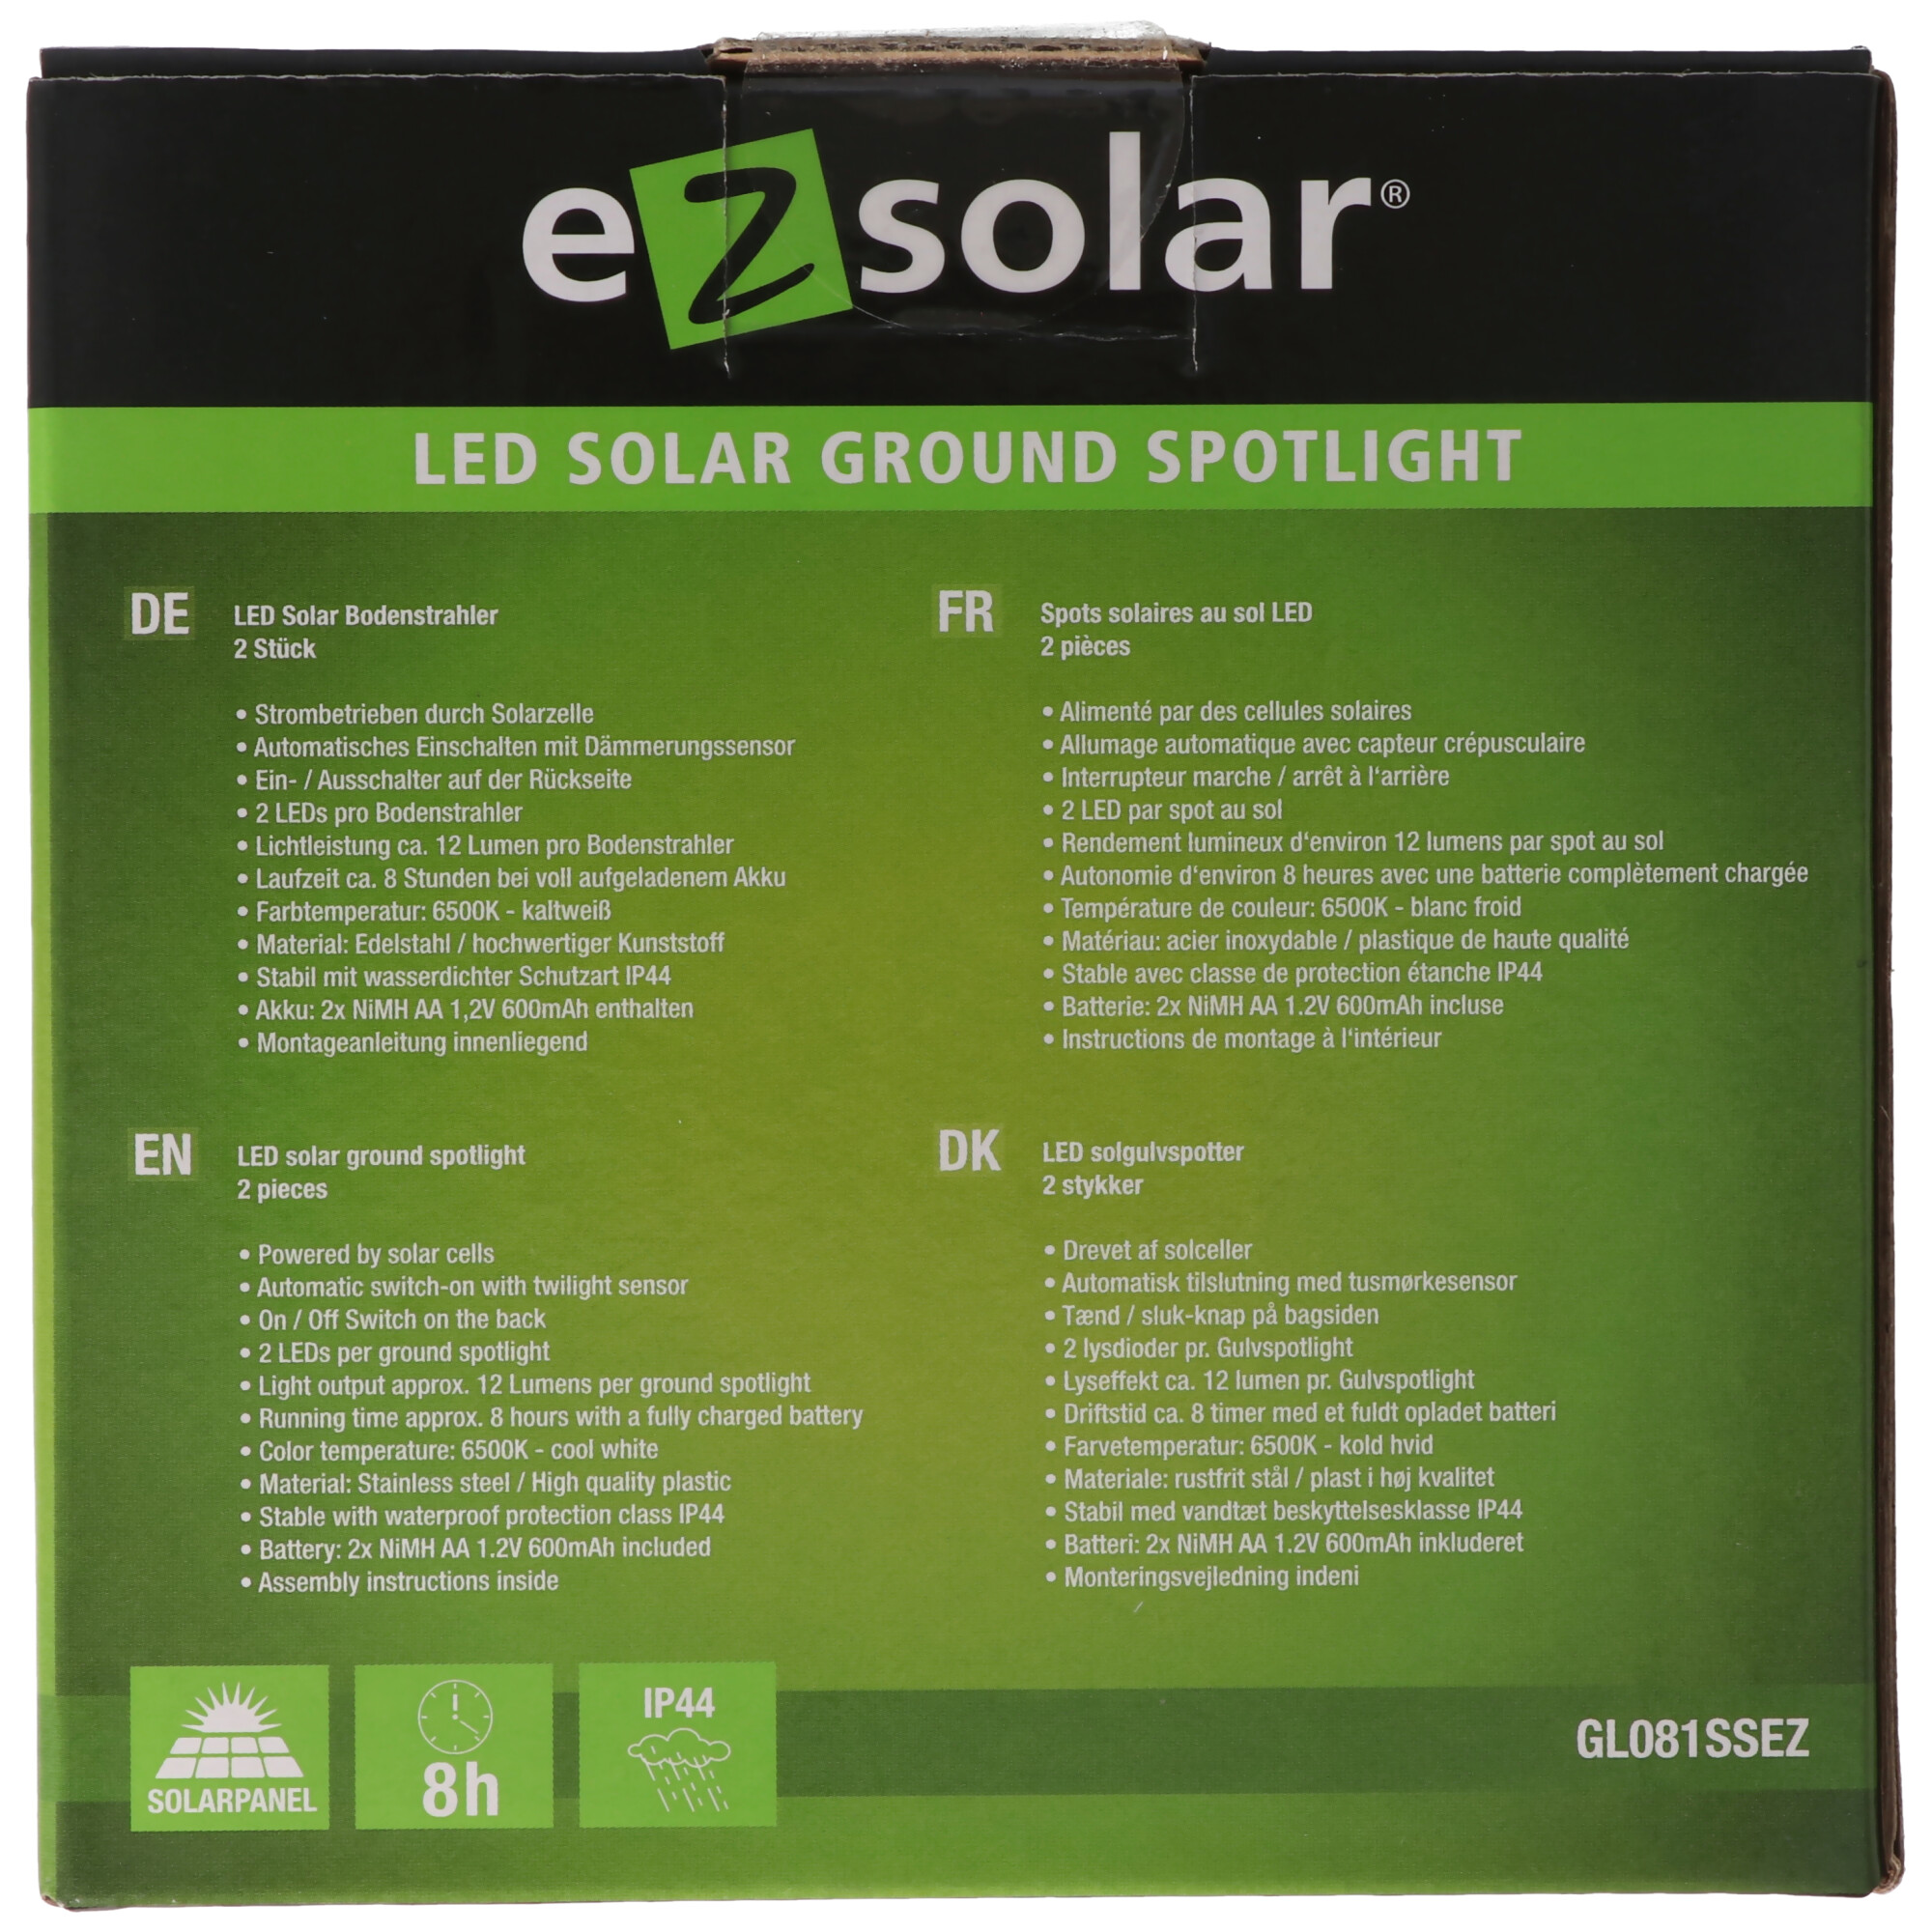 LED Solar Bodenleuchte mit 2 weissen LED max. 12 Lumen, Leuchtdauer max. 8 Stunden